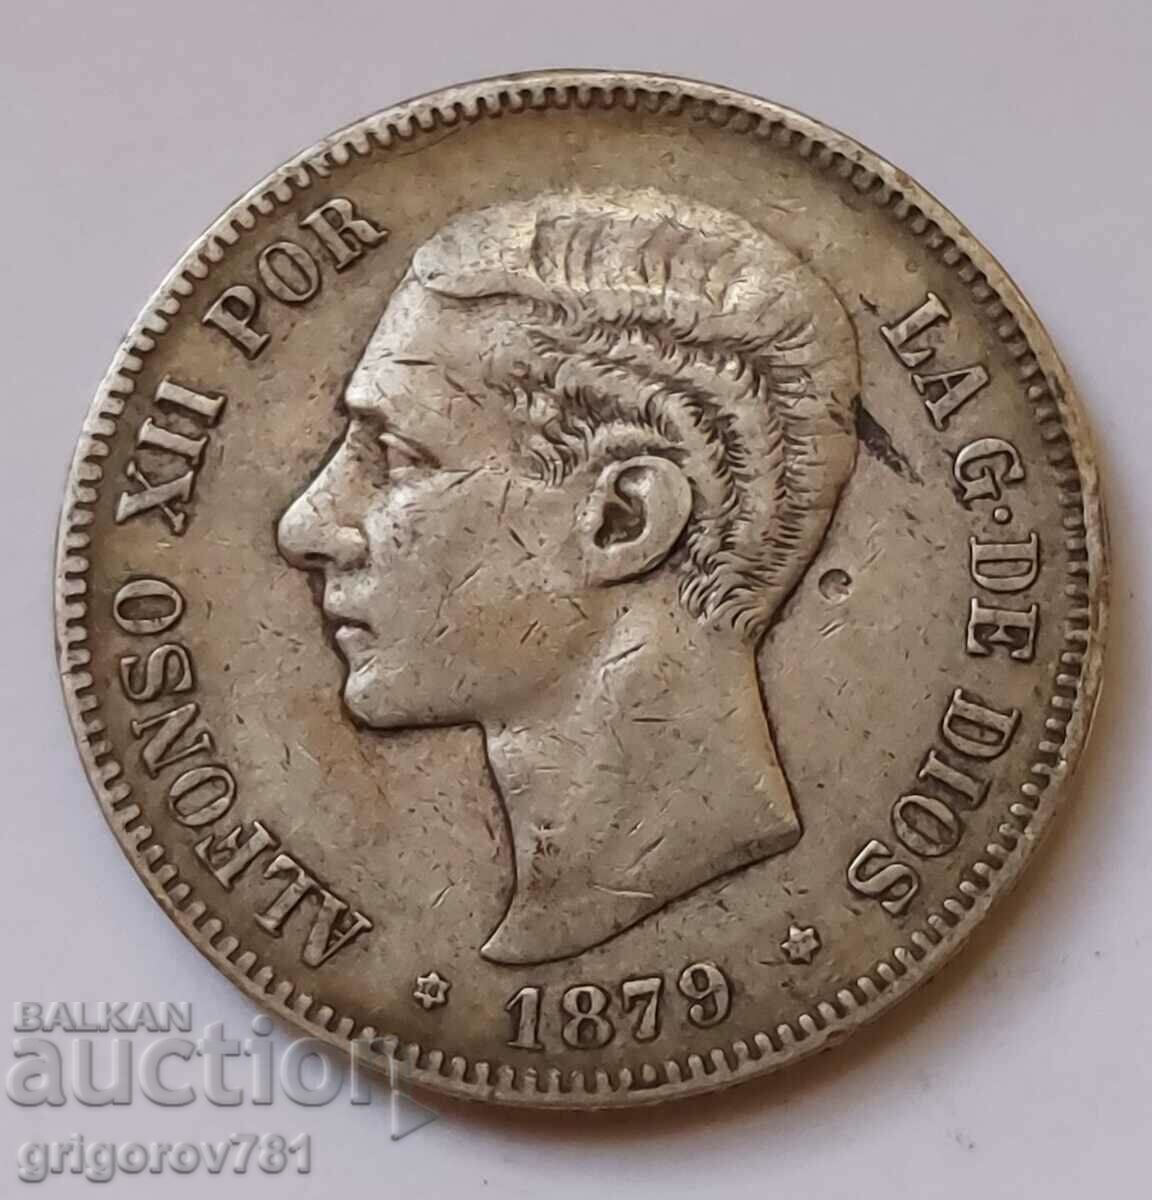 5 Pesetas Silver Spain 1879 - Silver Coin #216